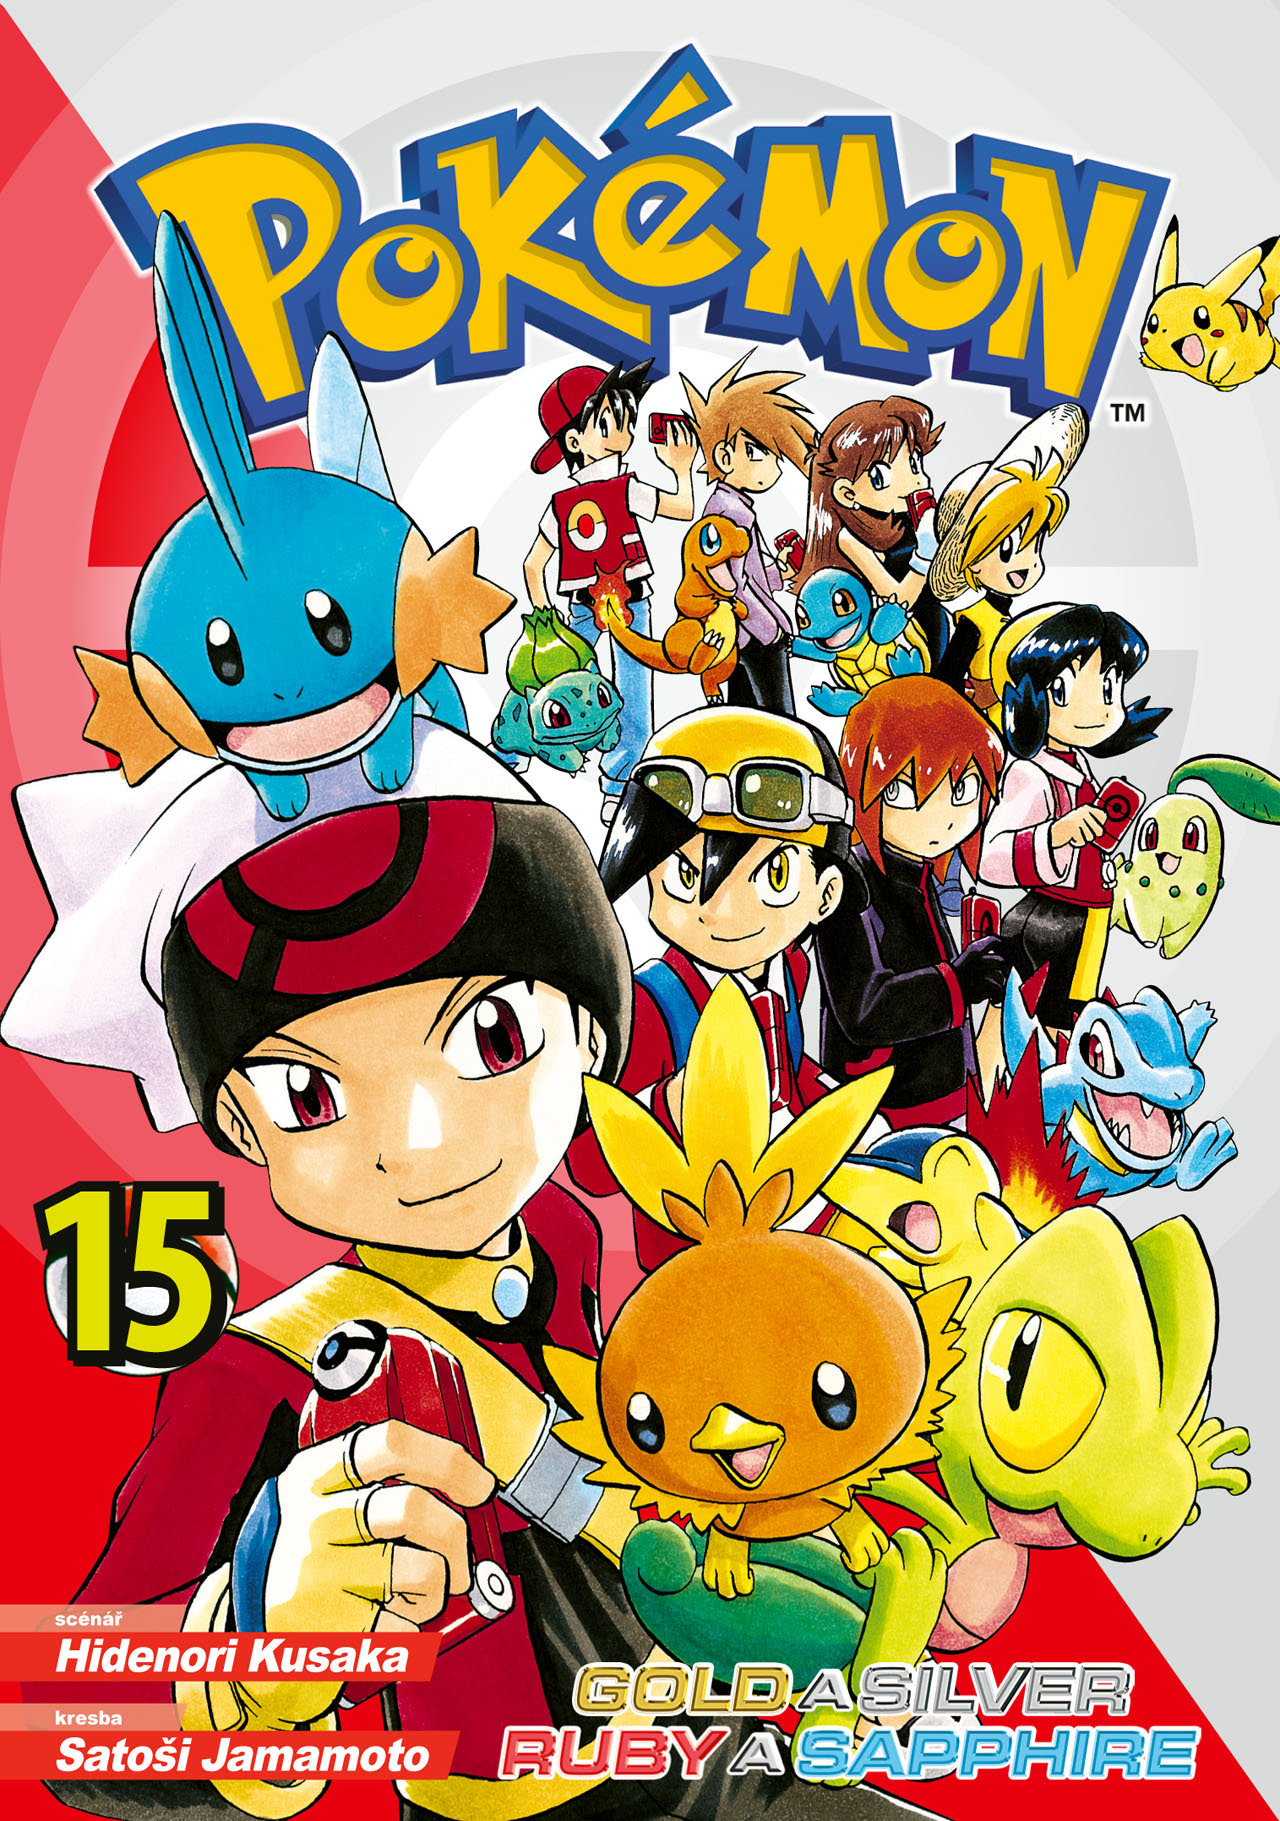 obrázek k novince - Pokémon 15 (Gold a Silver / Ruby a Sapphire)